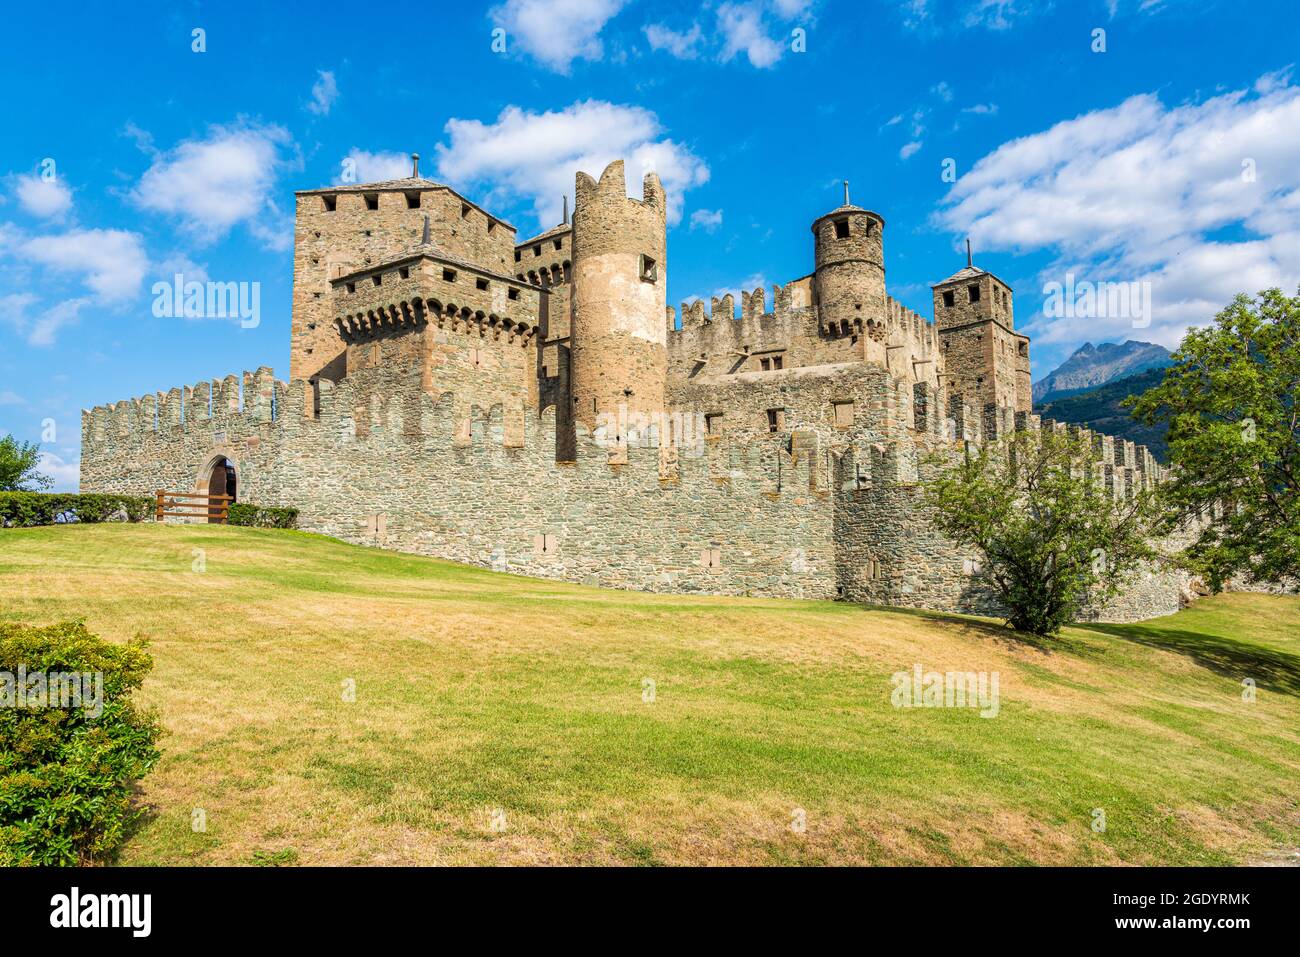 Castello di Fenis, famosa e ben conservata fortezza medievale in Valle d'Aosta, Italia settentrionale. Foto Stock